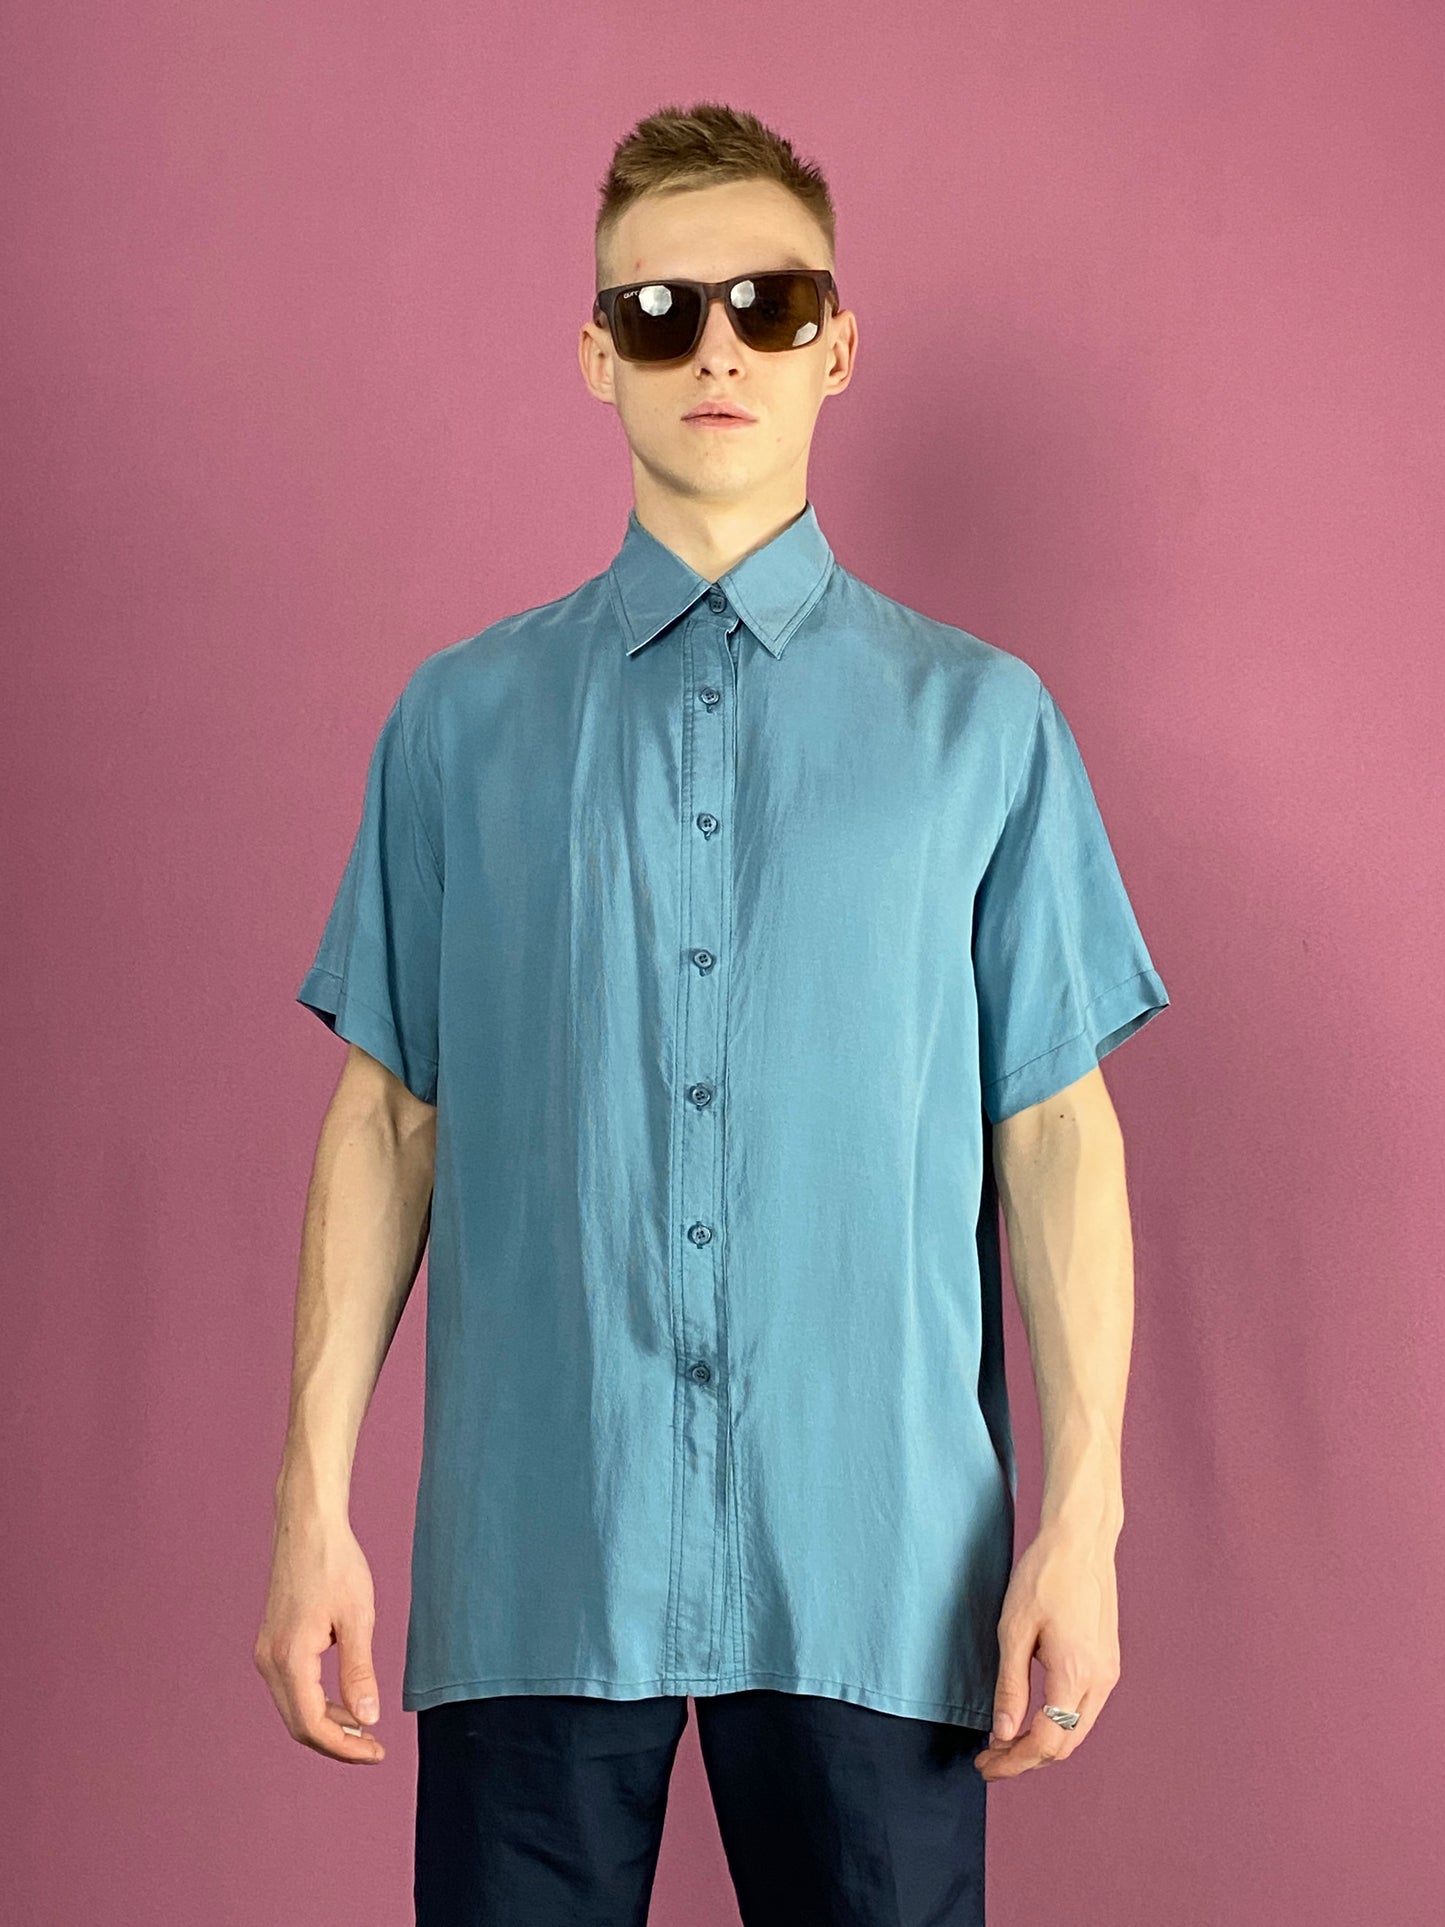 90s Vintage Men's Short Sleeve Shirt - Medium Blue Silk